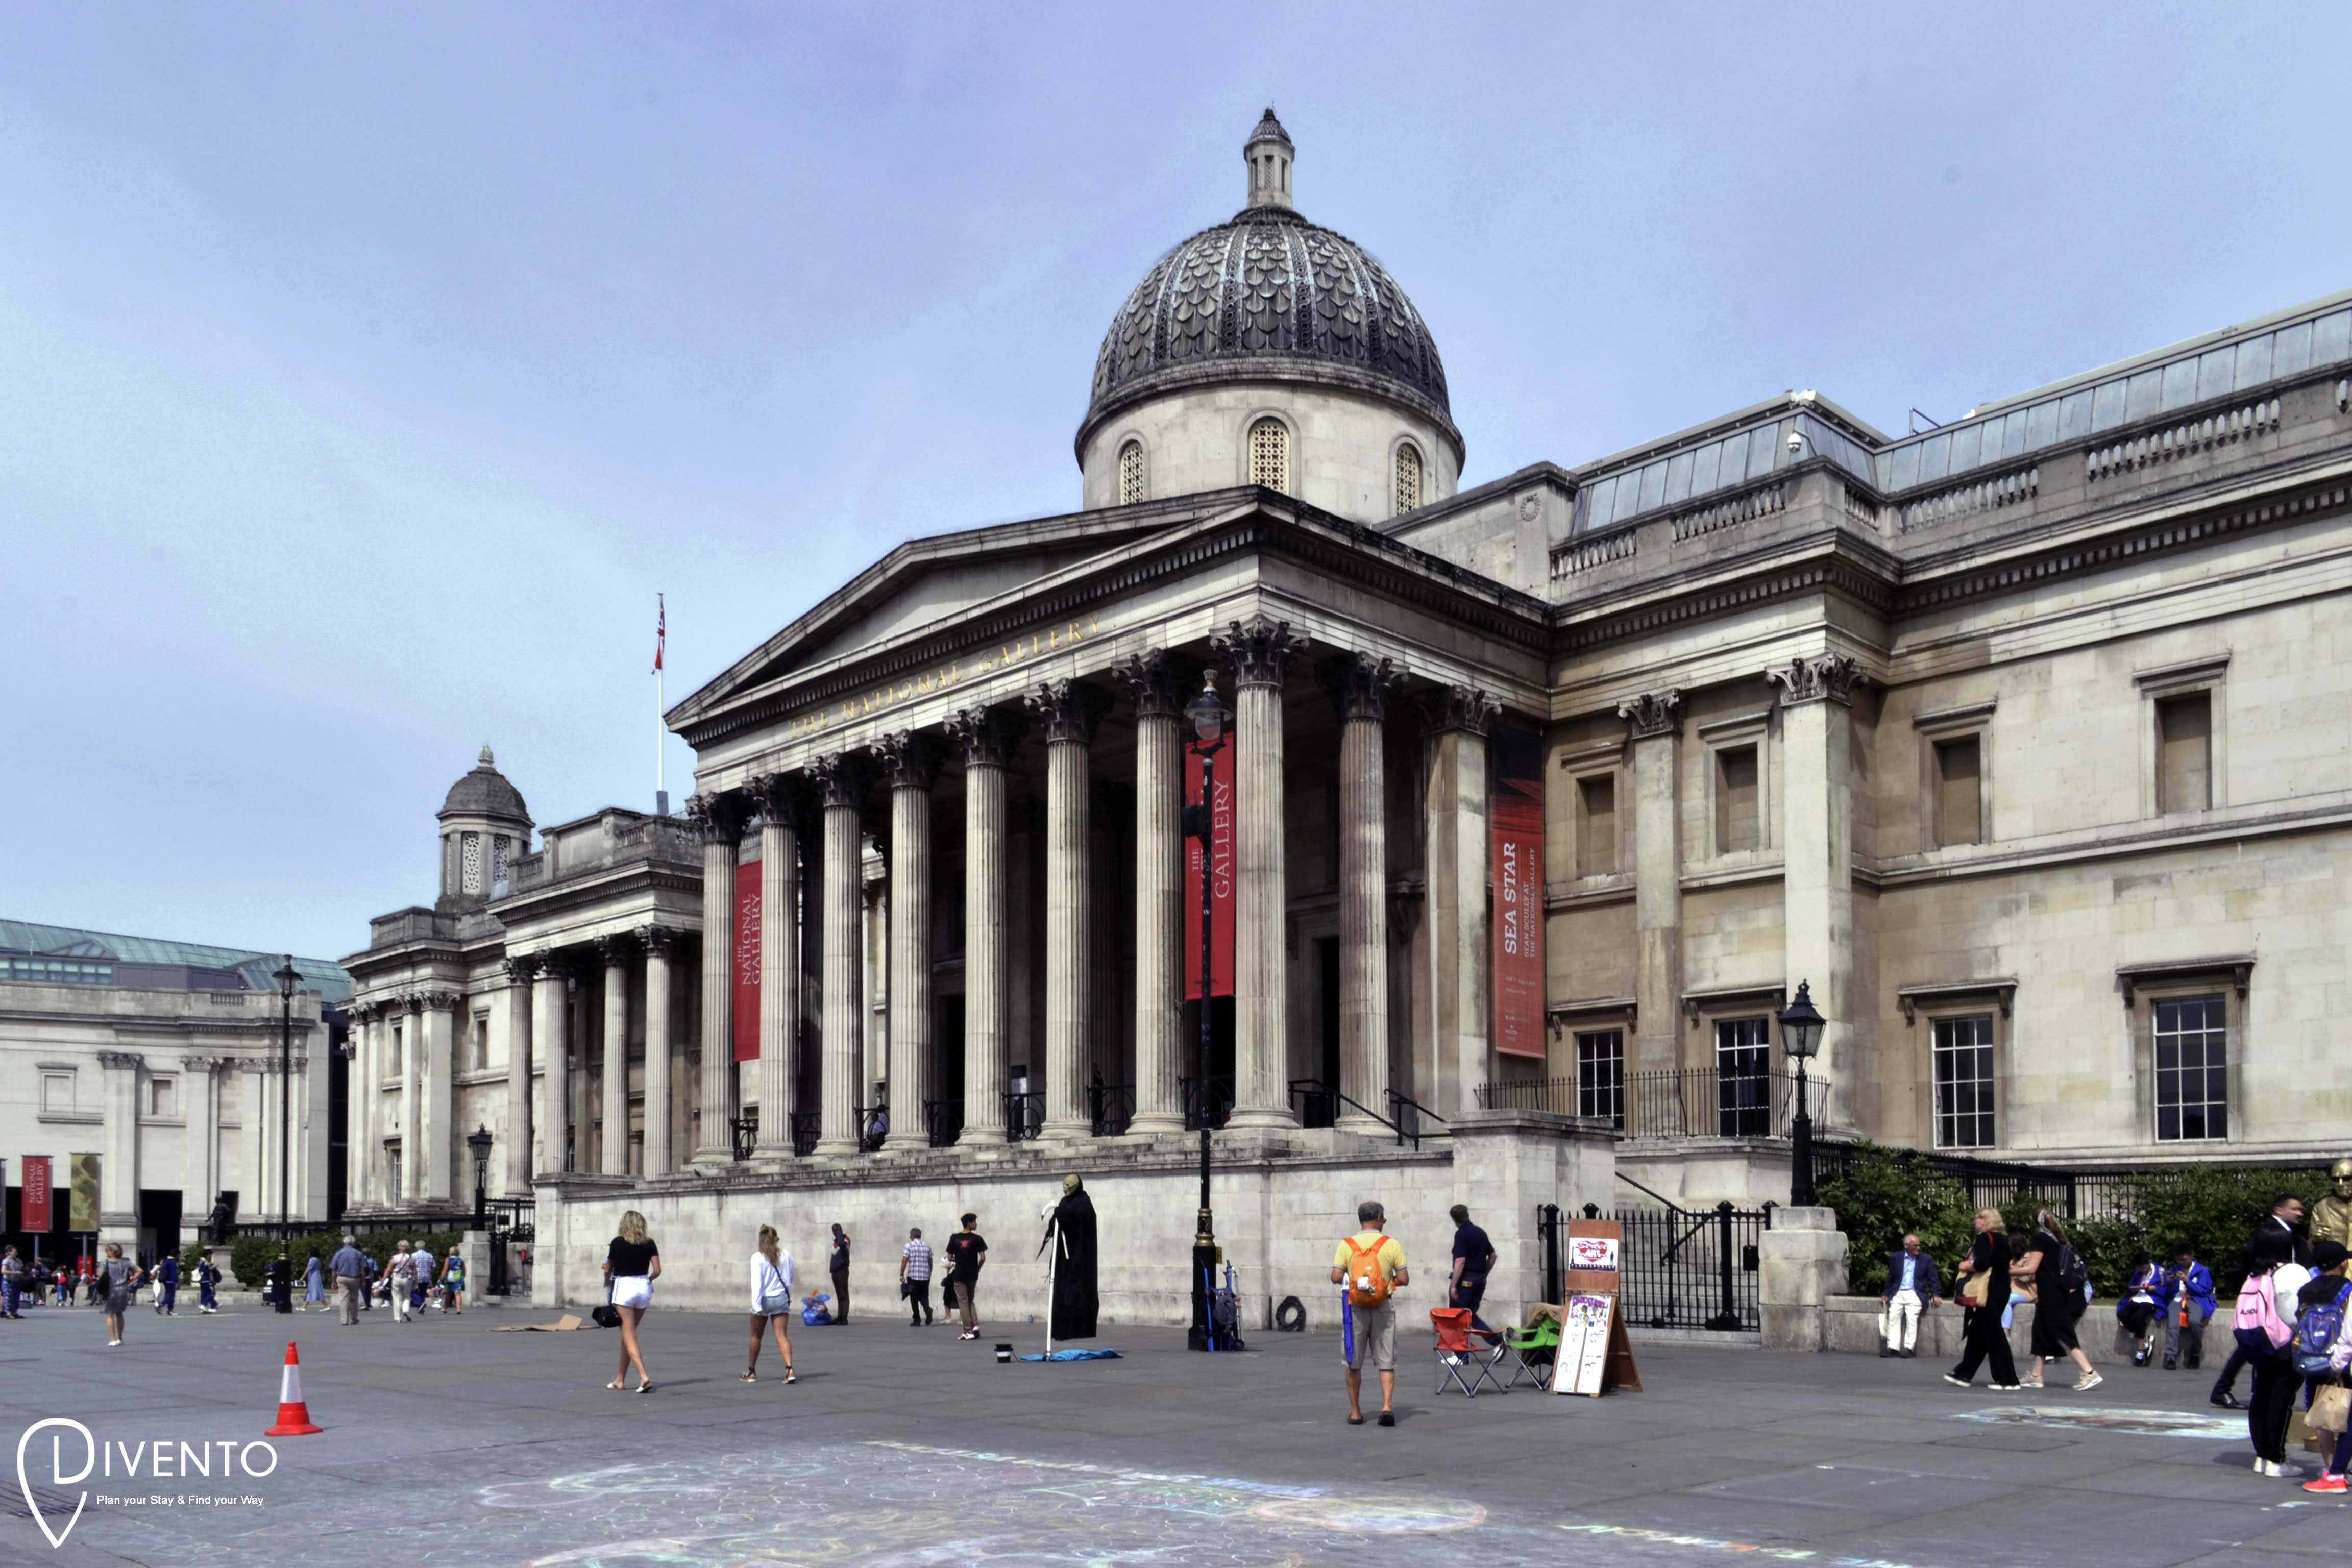 National Gallery, Londra, aperta tutto l'anno